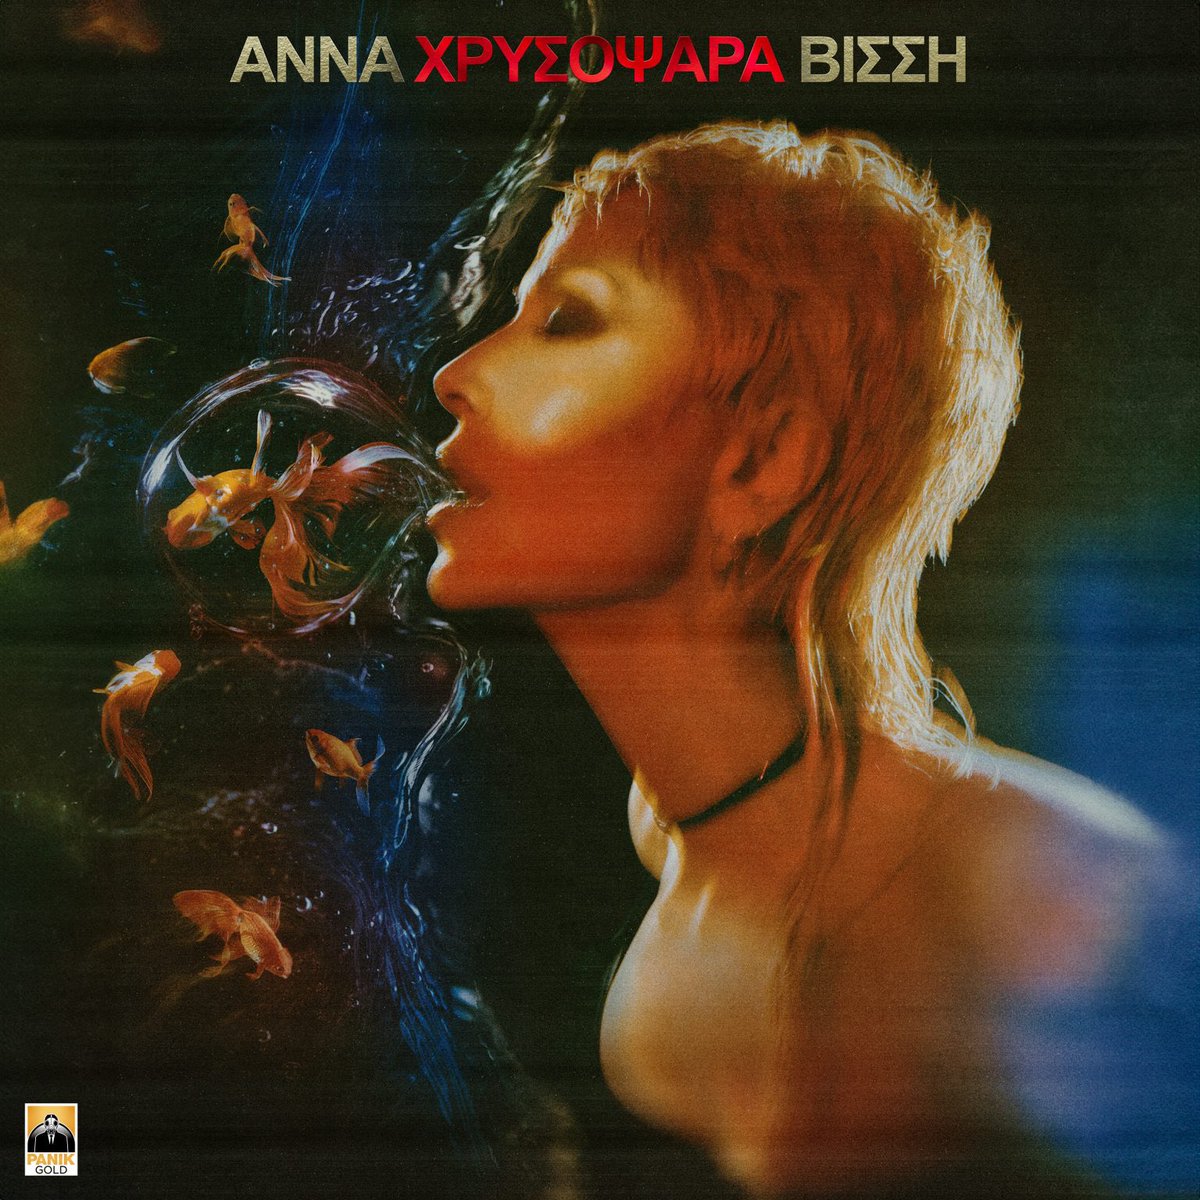 Η @AnnaVissiLive παρουσιάζει το νέο της single #Chrysopsara, με τη δημιουργική υπογραφή του Νίκου Καρβέλα! Το νέο hit single θα κυκλοφορήσει την Παρασκευή 17/05. Από τη Δευτέρα 13/05 θα μεταδίδεται από επιλεγμένα ραδιόφωνα. 🔗 More Info: bit.ly/4dwCOU1